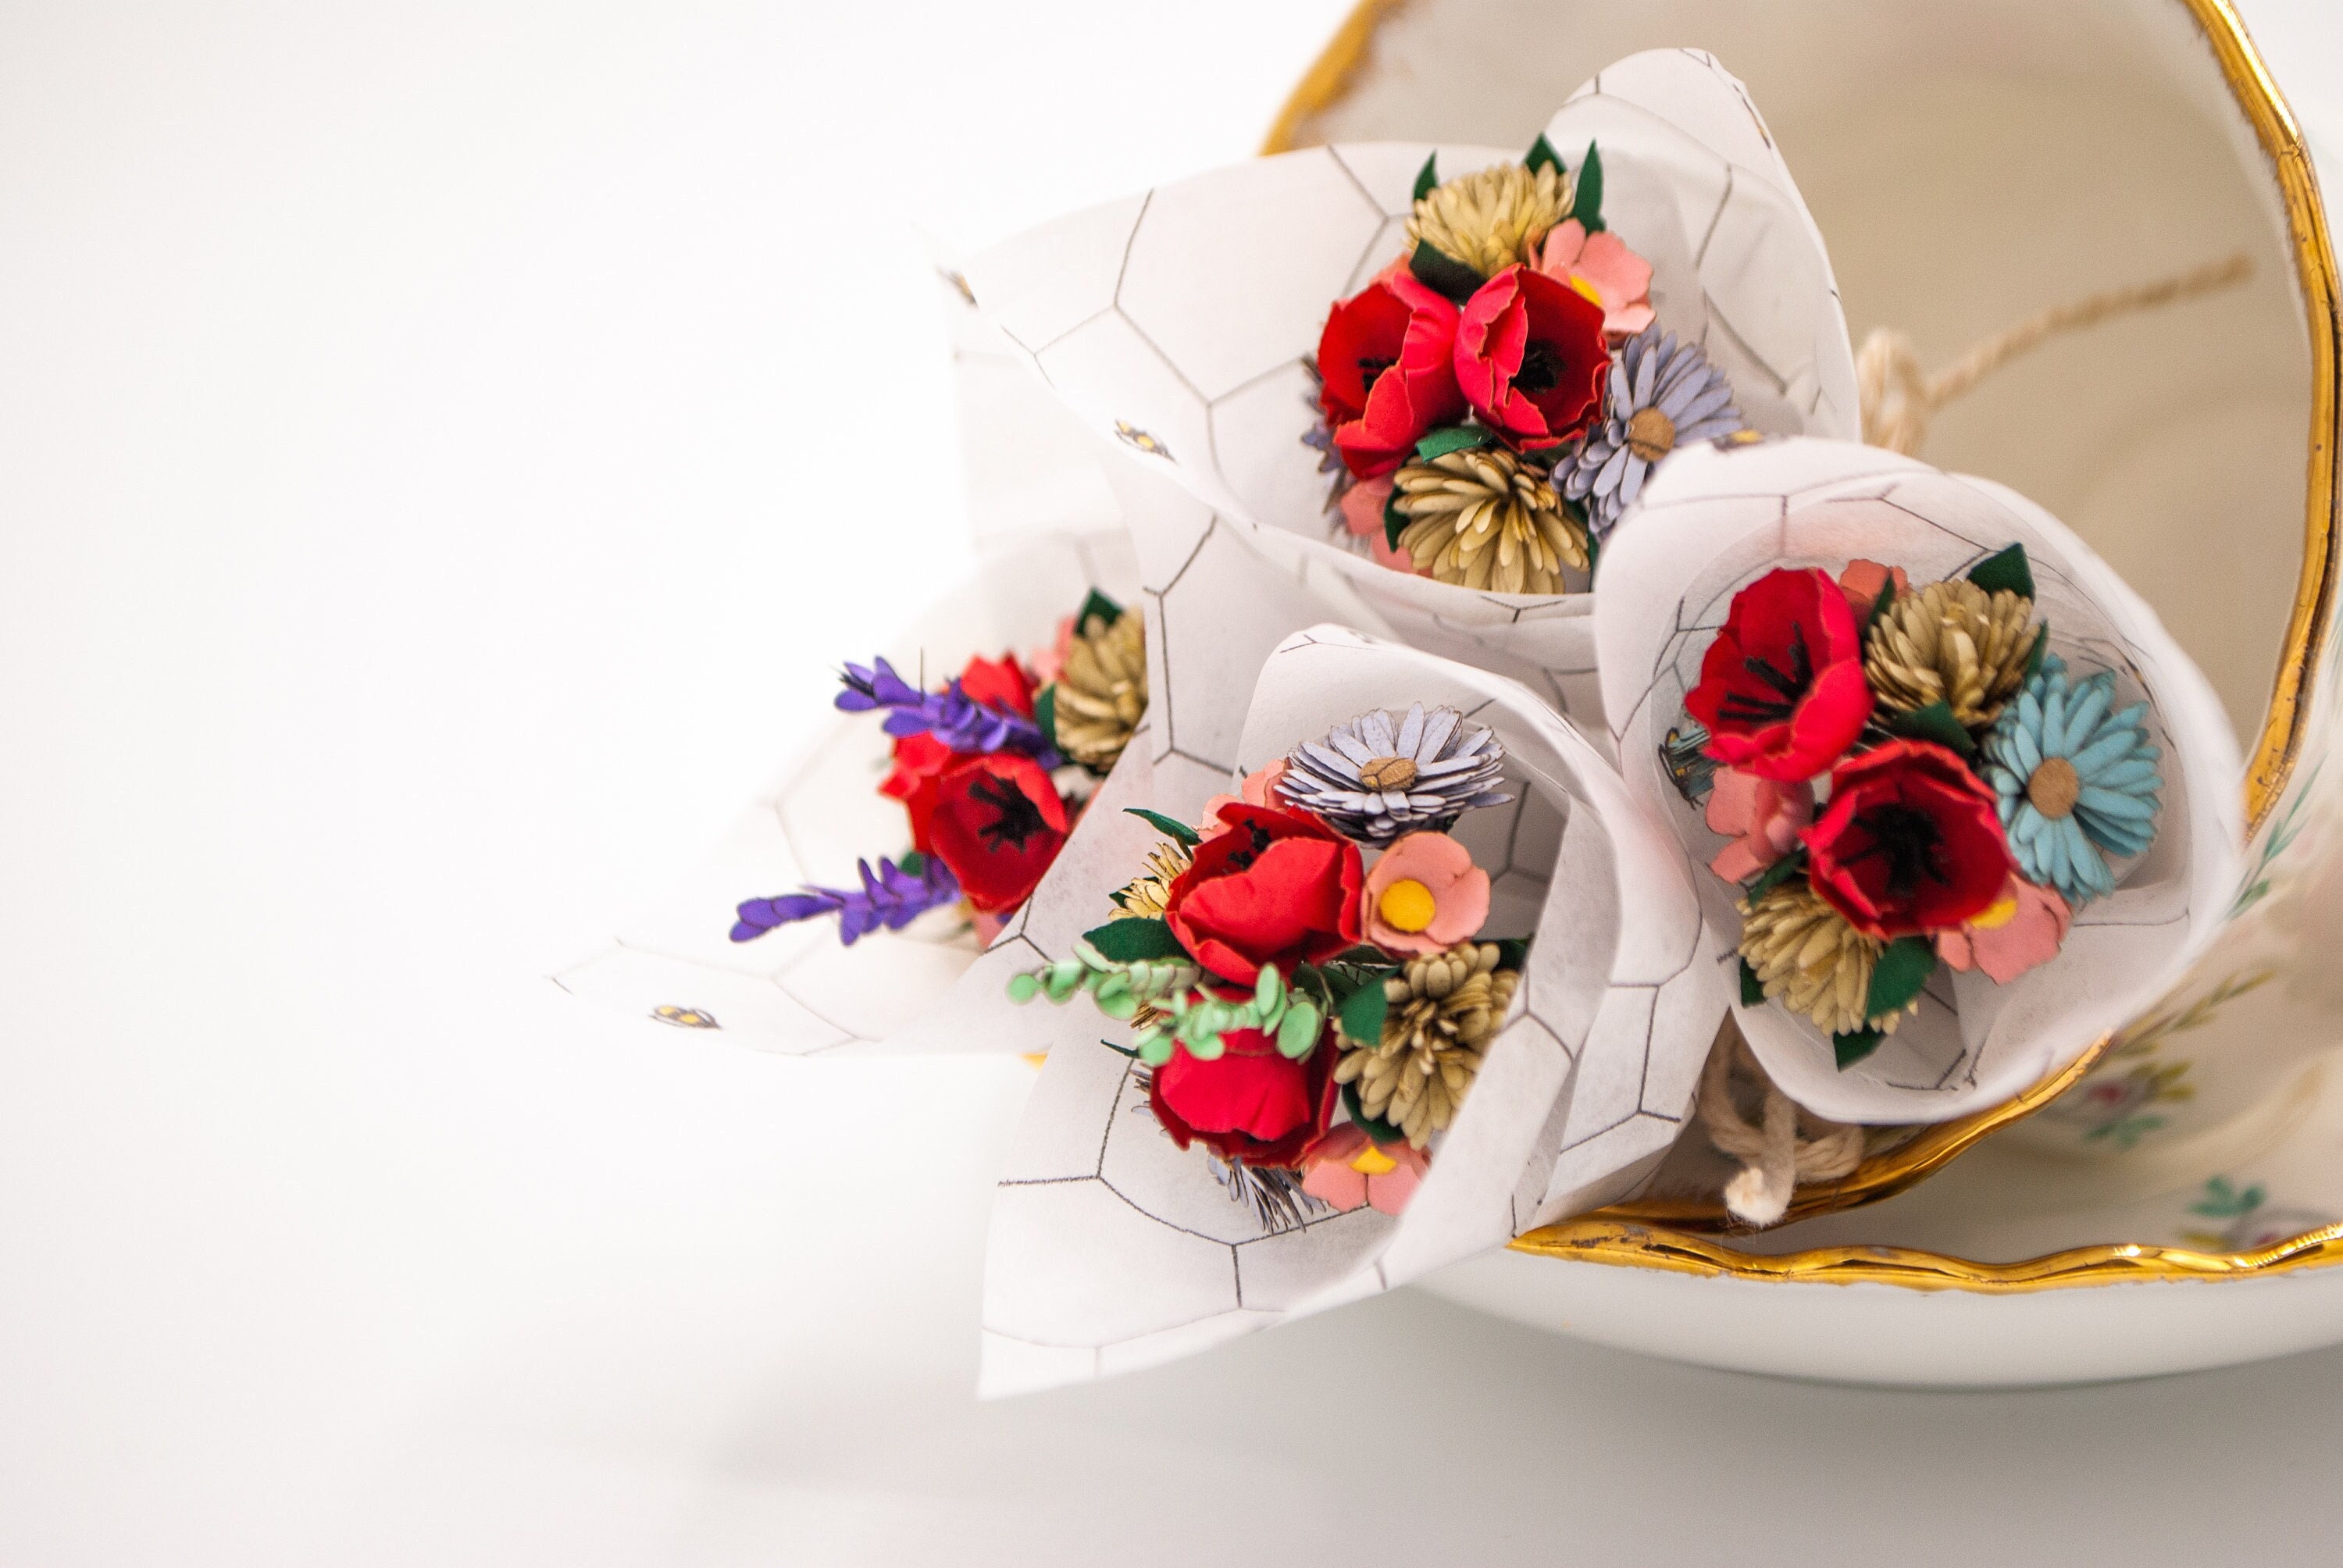 Micro Flower Bouquet :: a Unique Floral Gift Idea, Delivery